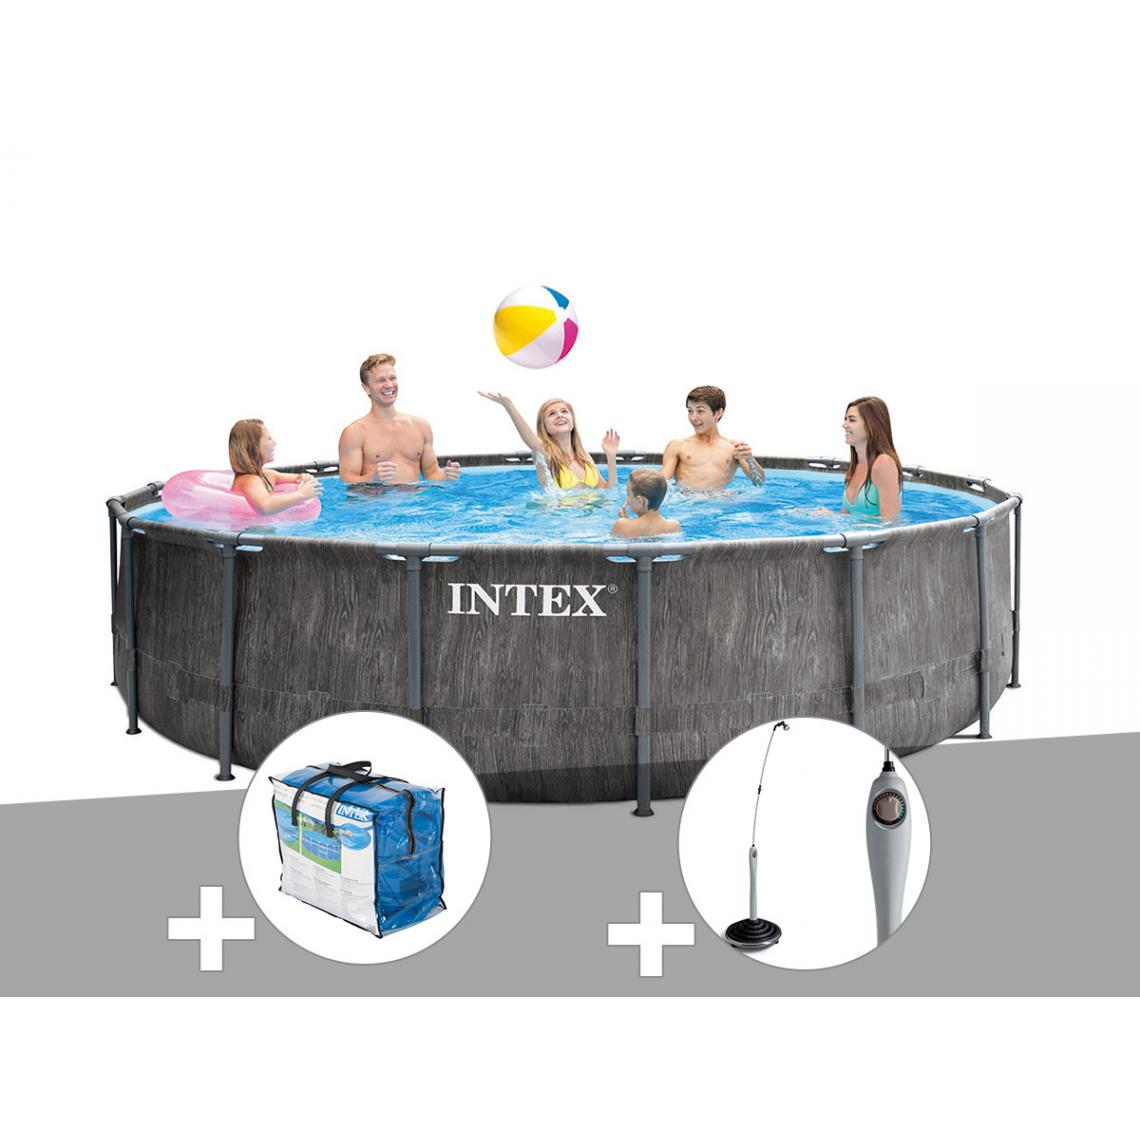 Intex - Kit piscine tubulaire Intex Baltik ronde 5,49 x 1,22 m + Bâche à bulles + Douche solaire - Piscine Tubulaire